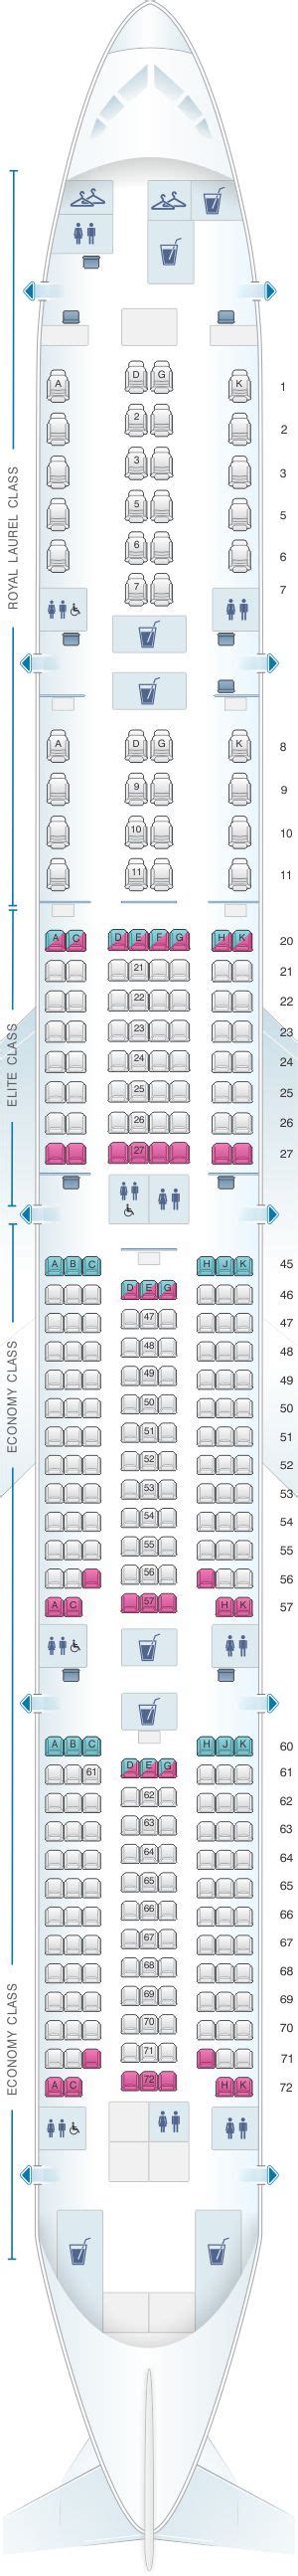 seat map eva air boeing  er pax eva air seating plan